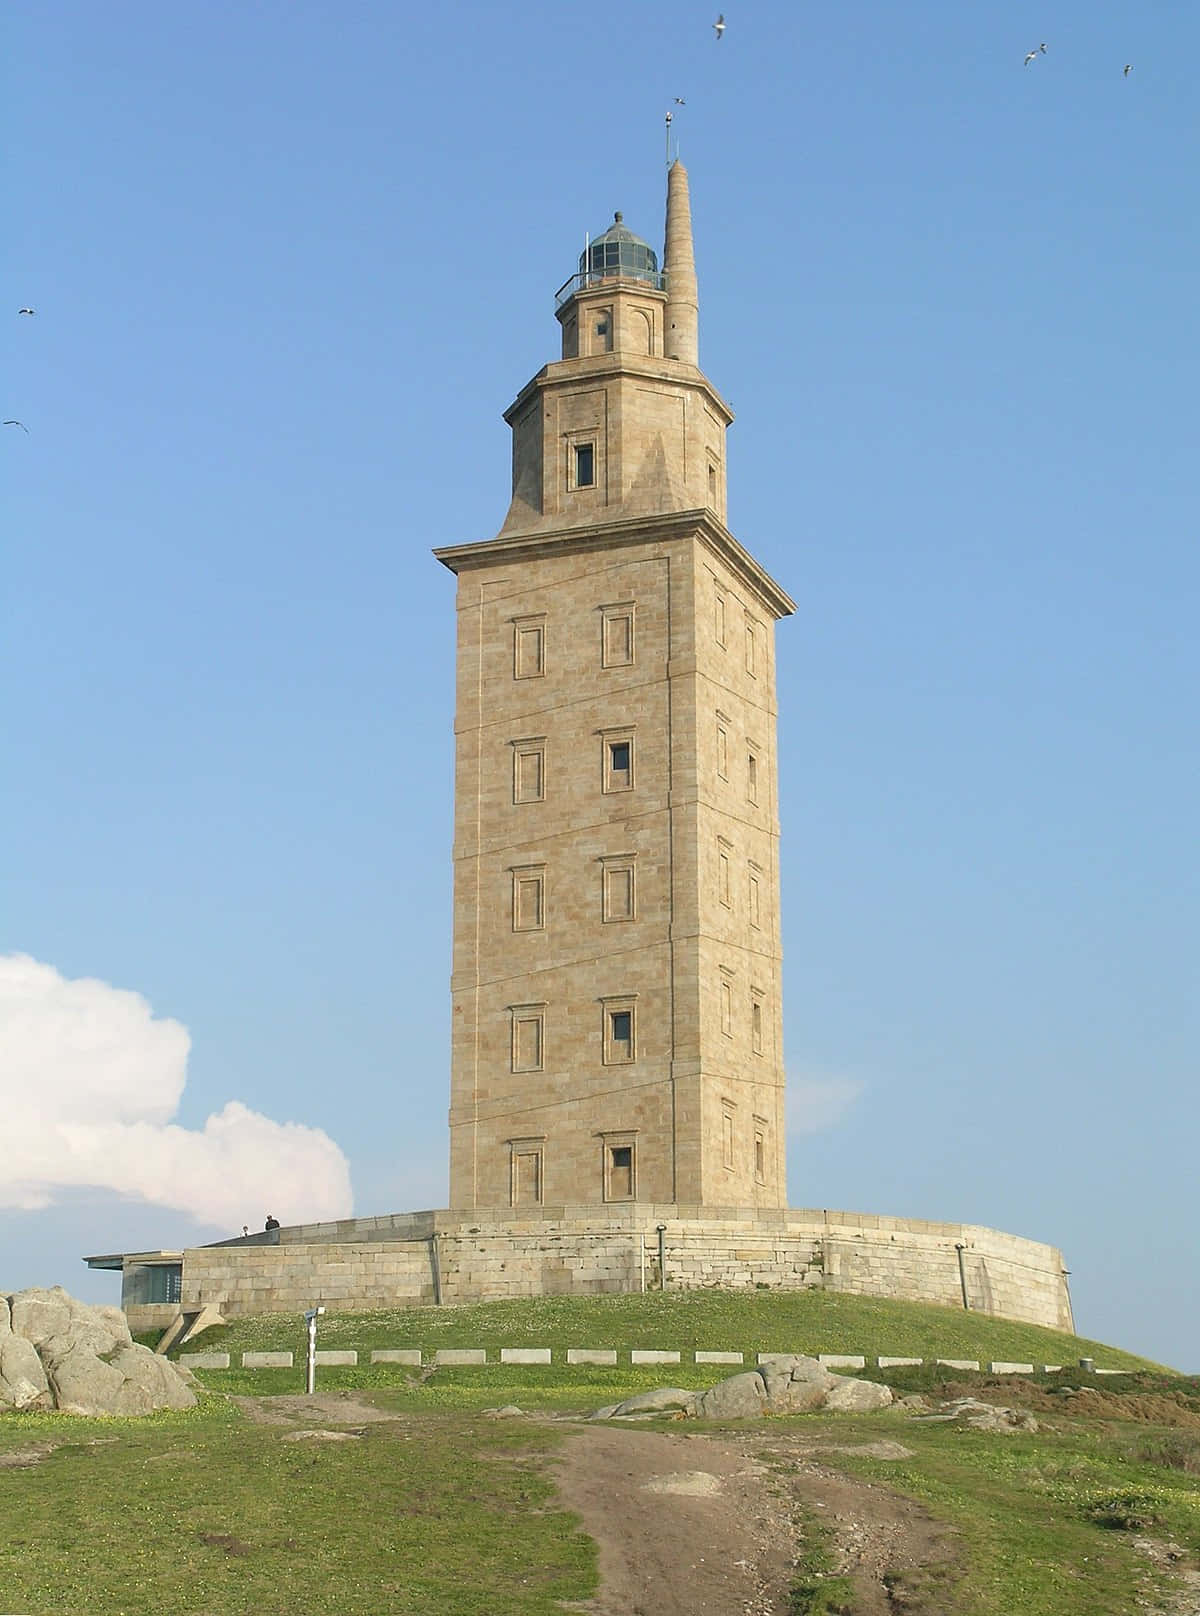 Tårnet af Hercules står højt under blå himmel. Wallpaper